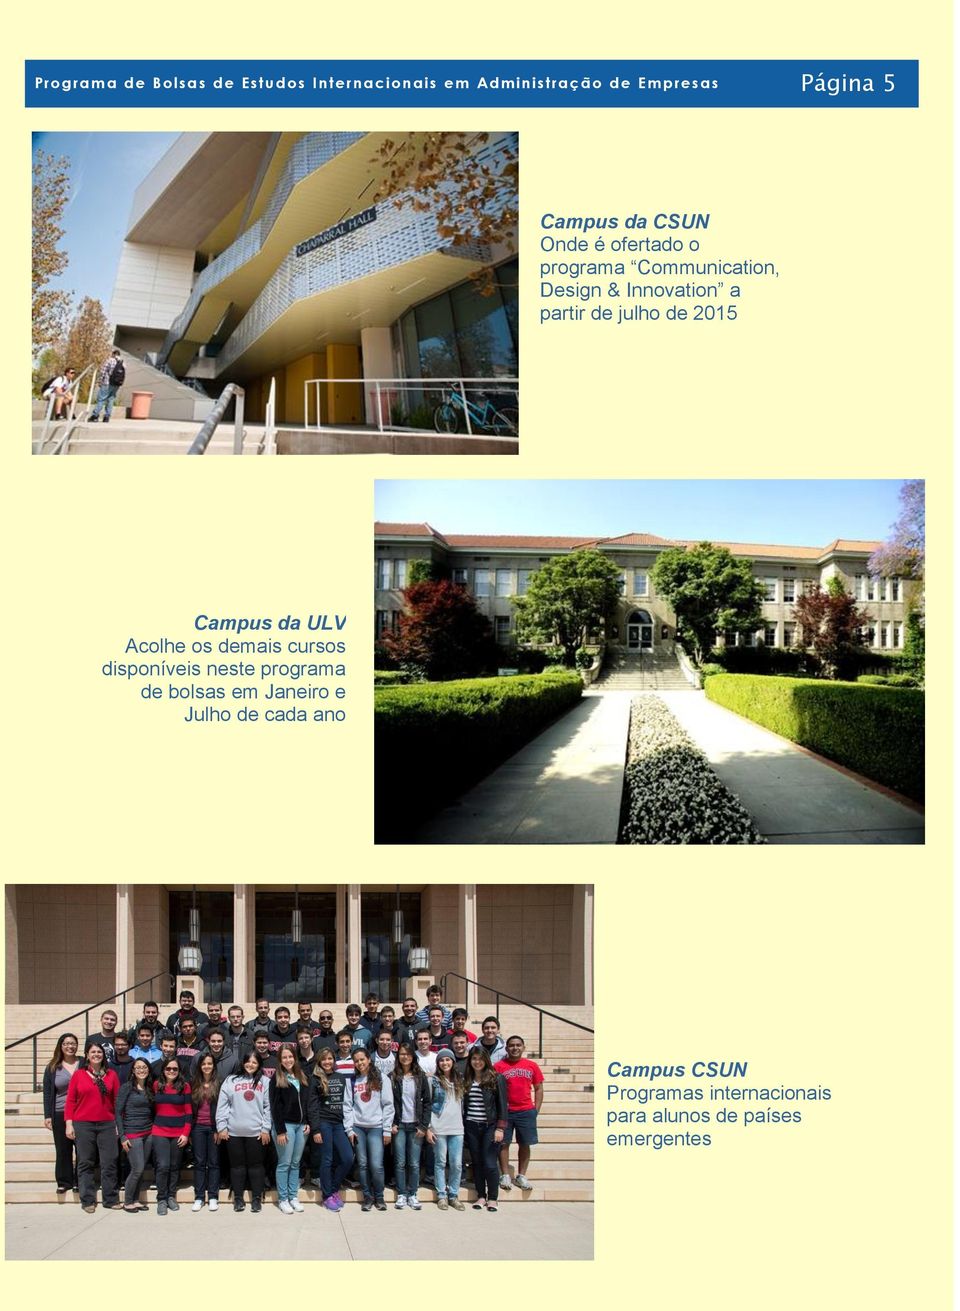 julho de 2015 Campus da ULV Acolhe os demais cursos disponíveis neste programa de bolsas